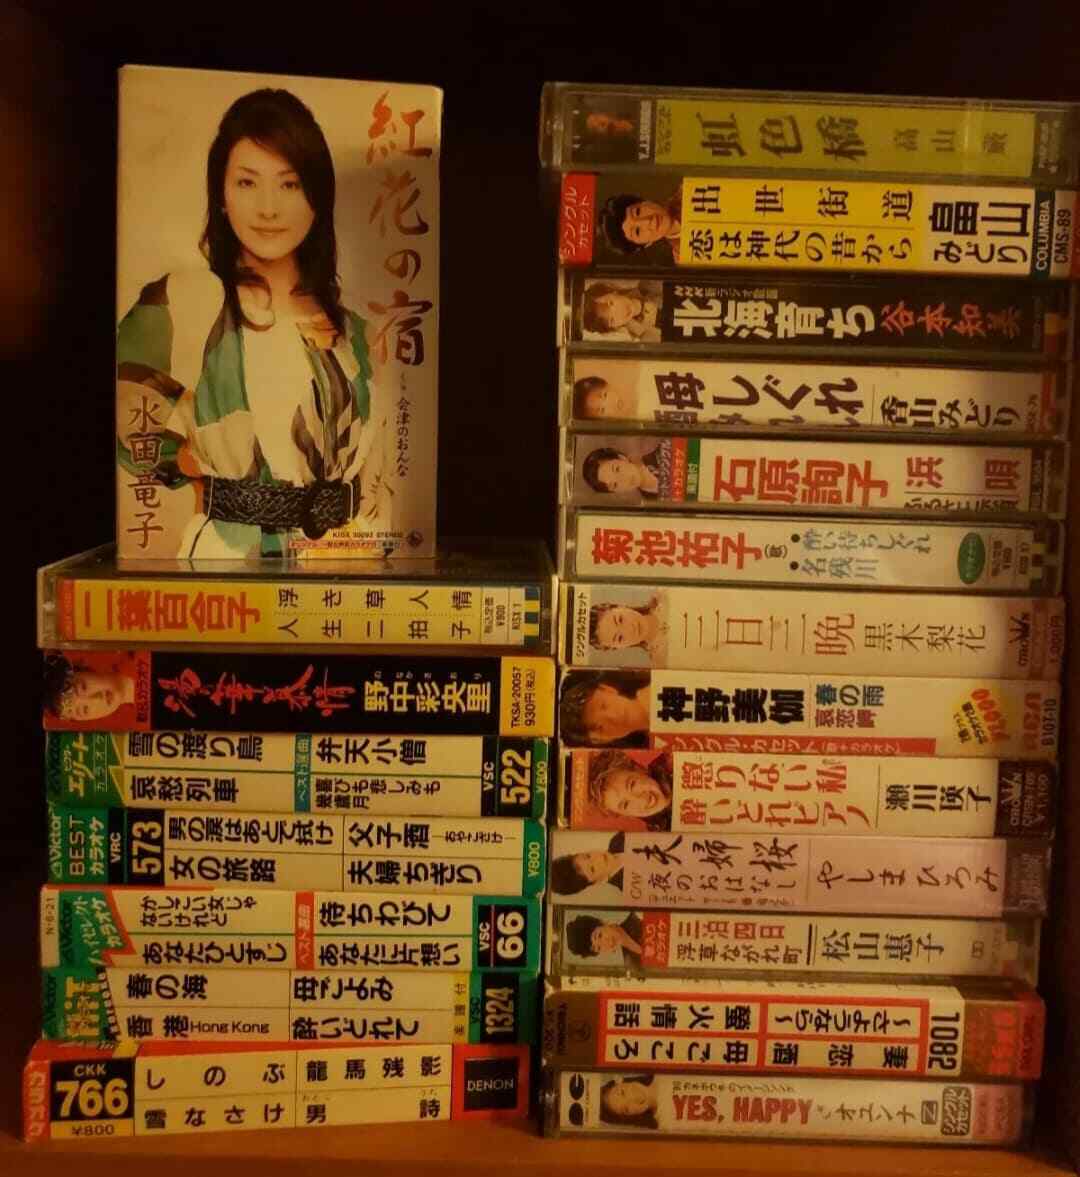 One Random Enka Karaoke Japanese Cassette Tape Vaporwave Sampling Material